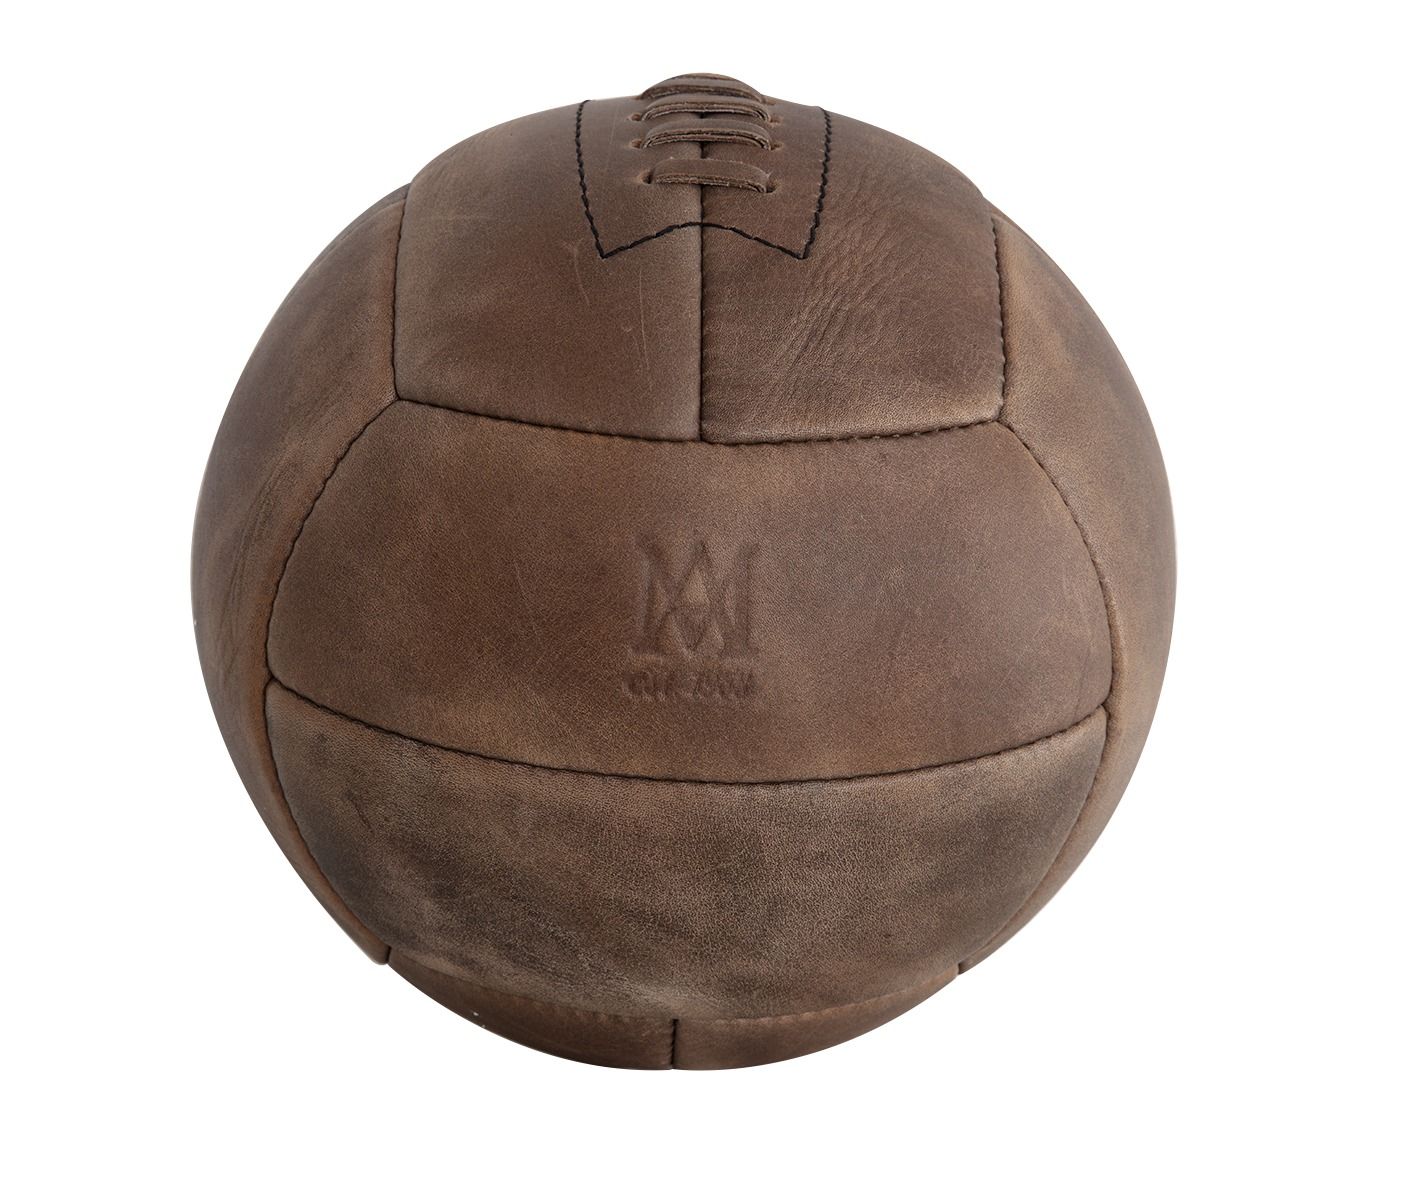 Кожаный мяч купить. Кожаный футбольный мяч. Кожаный футбольный мяч ретро. Мячик футбольный кожаный. Футбольный мяч коричневый.